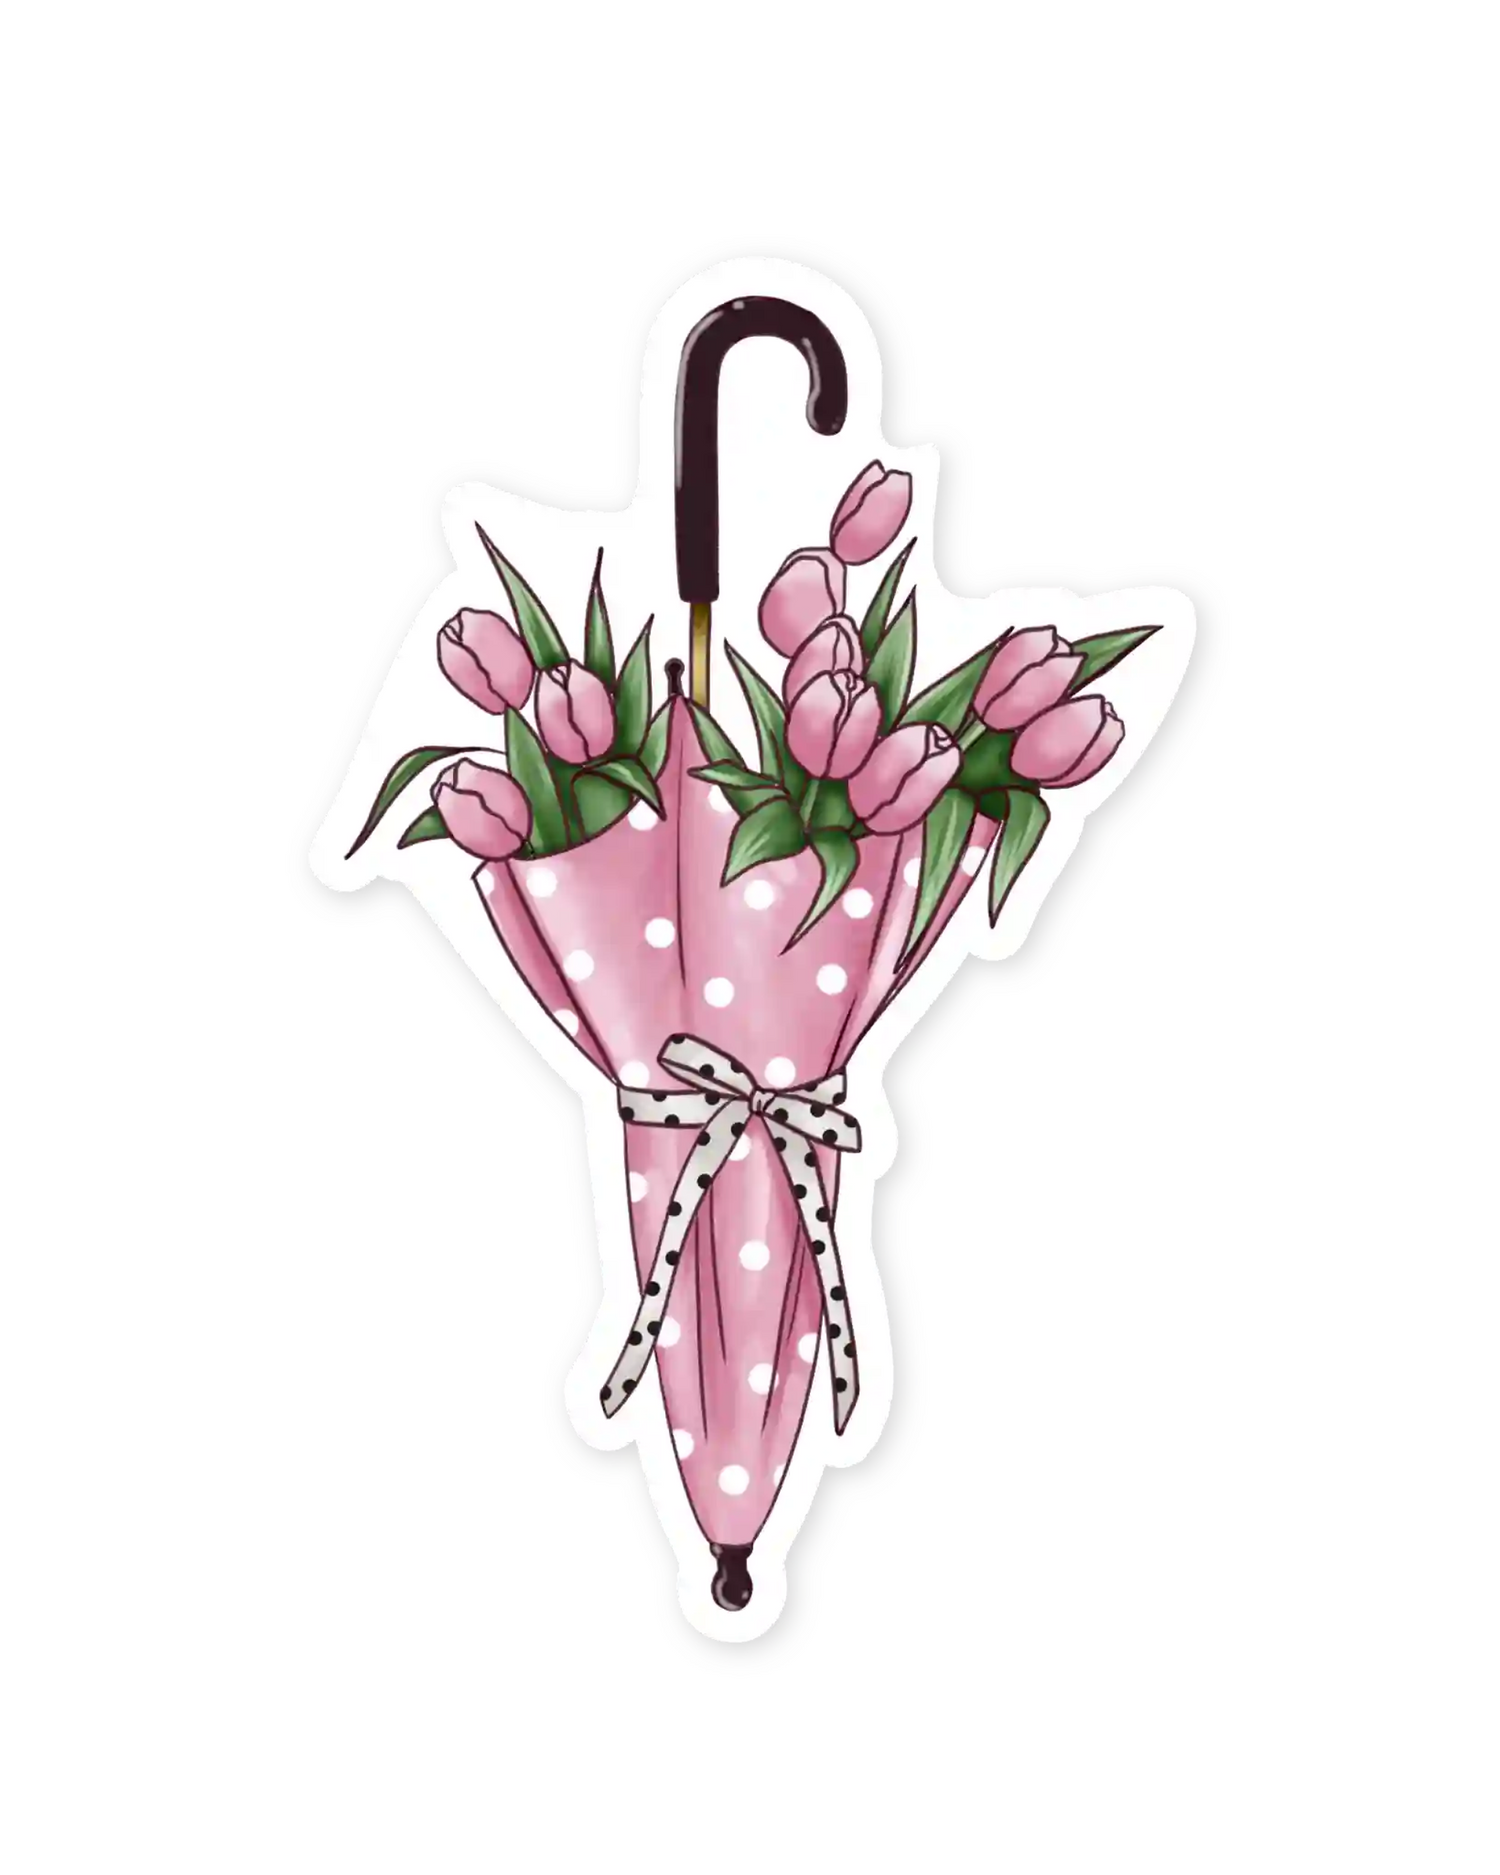 Naljepnice za planer Hop Into Spring ilustracije detalj kišobran s cvijećem